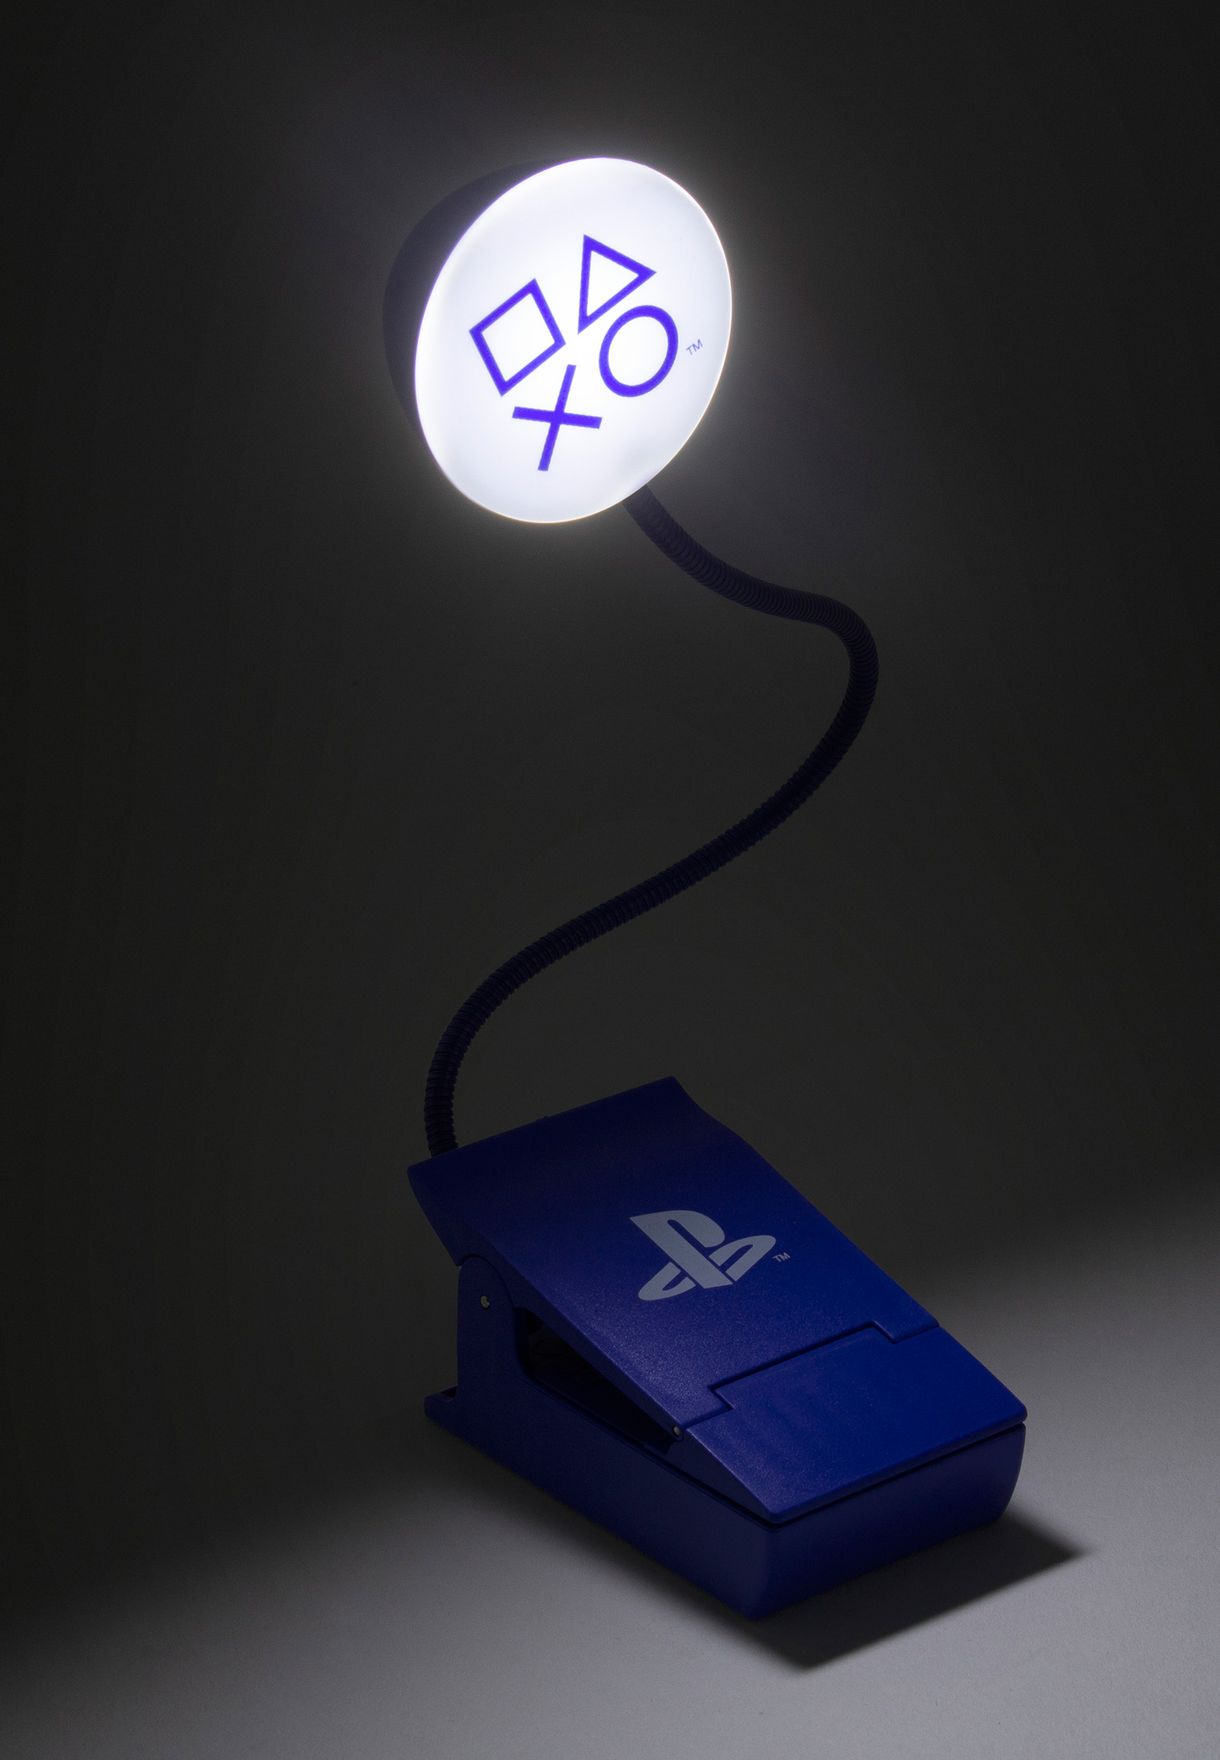 Playstation Book Light